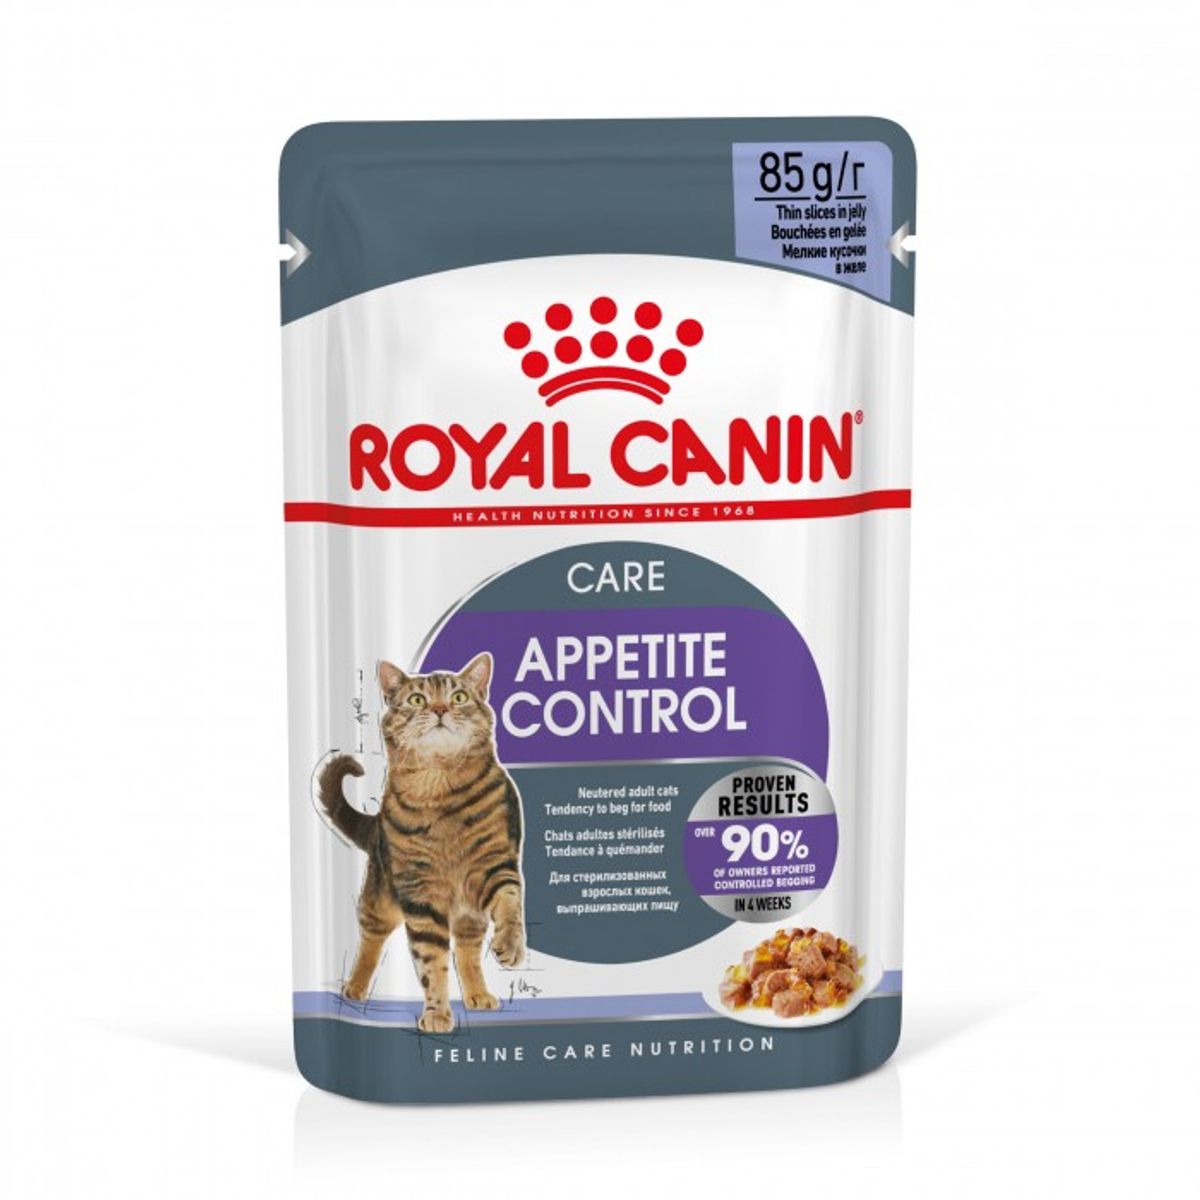 Appetite Control Care en gelée 12 x 85 g - Royal Canin